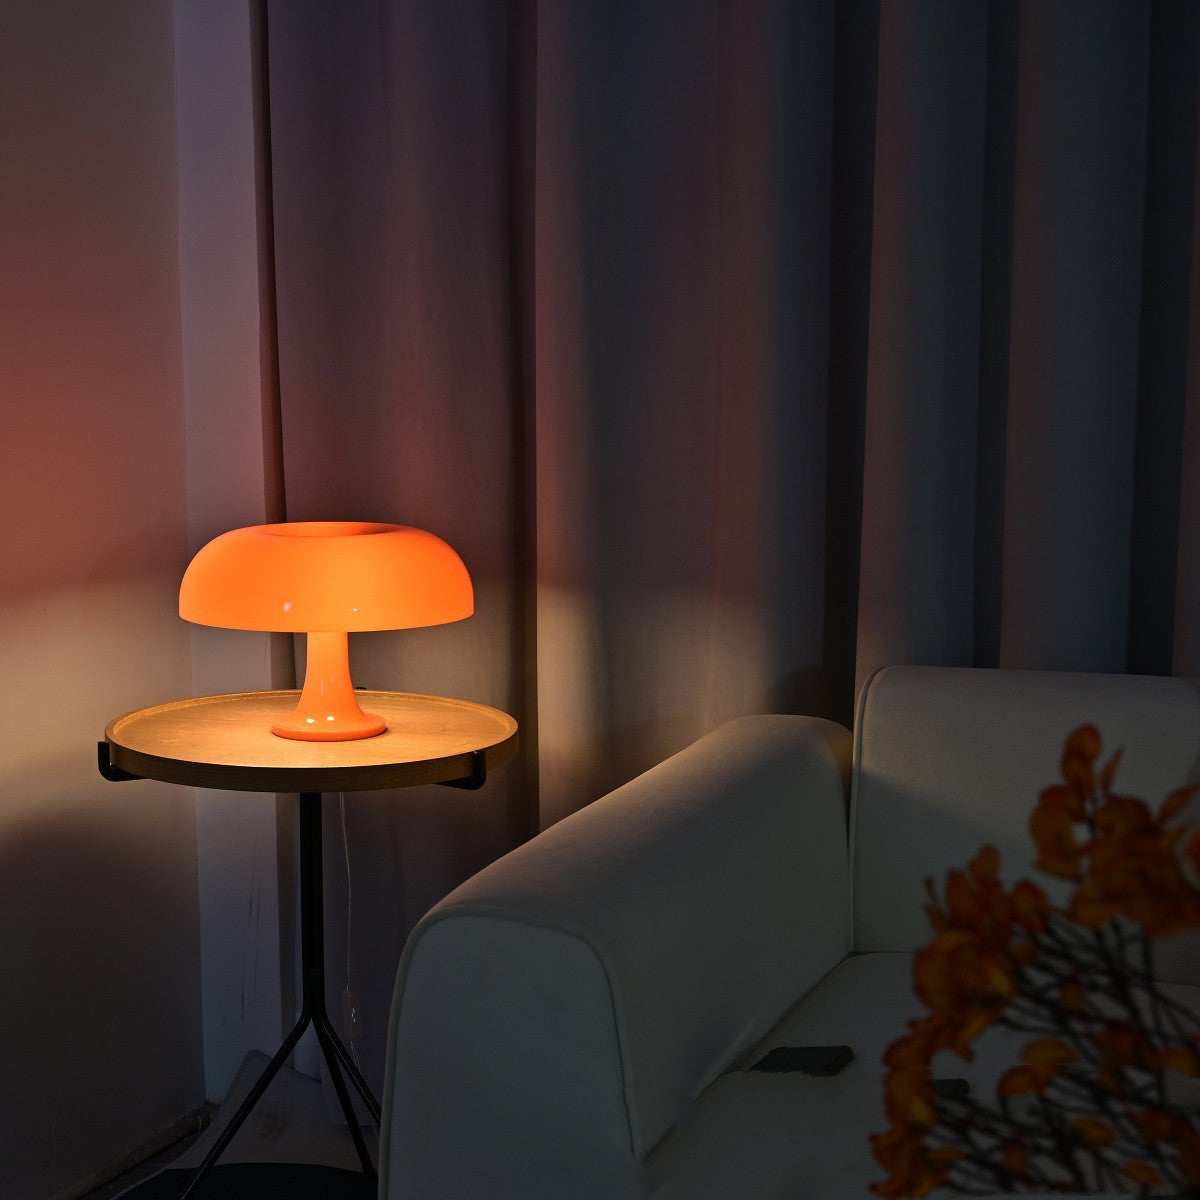 Fritz - Mushroom Lamp